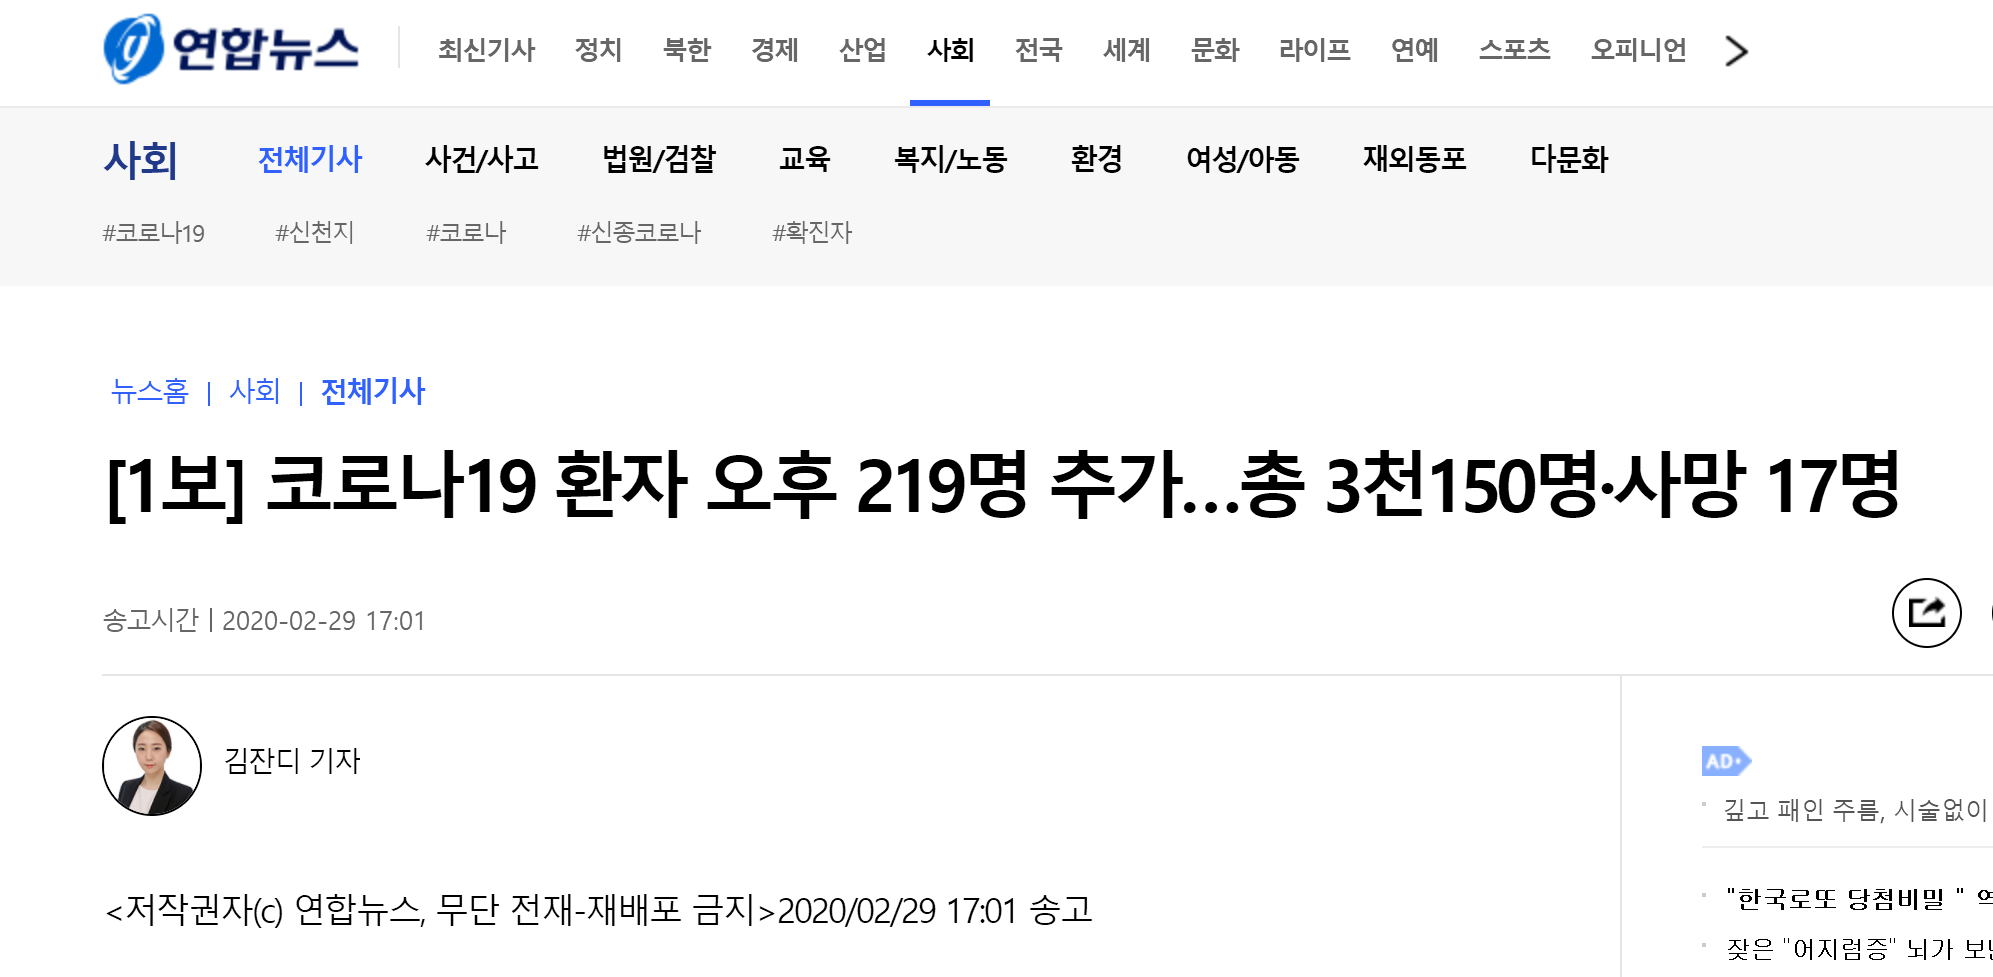 韩国新增219例新冠肺炎确诊病例 累计确诊3150例